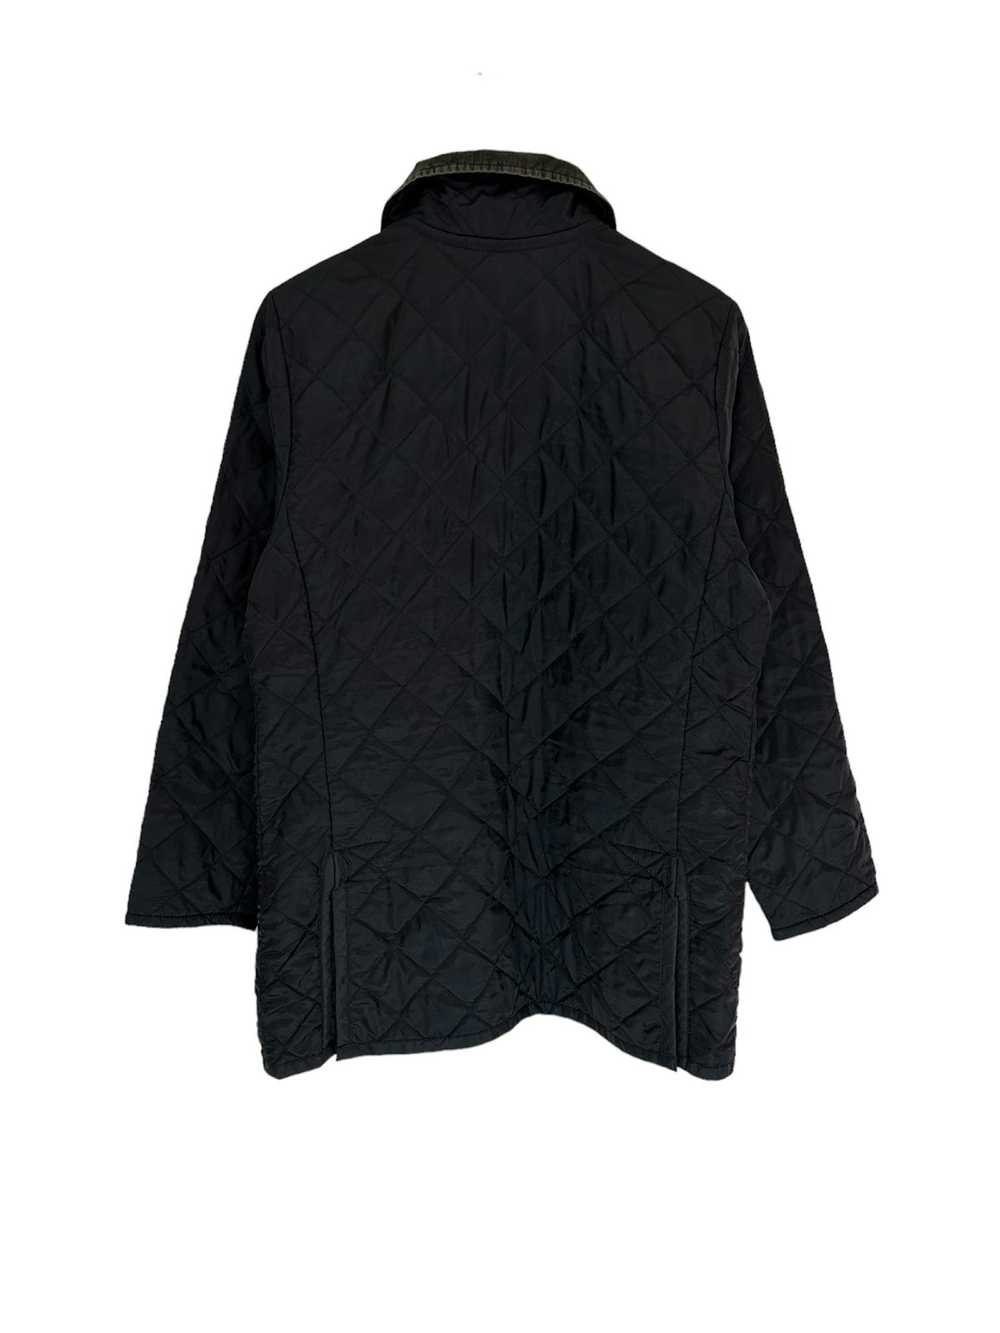 Lavenham Lavenham quilted jacket - image 6